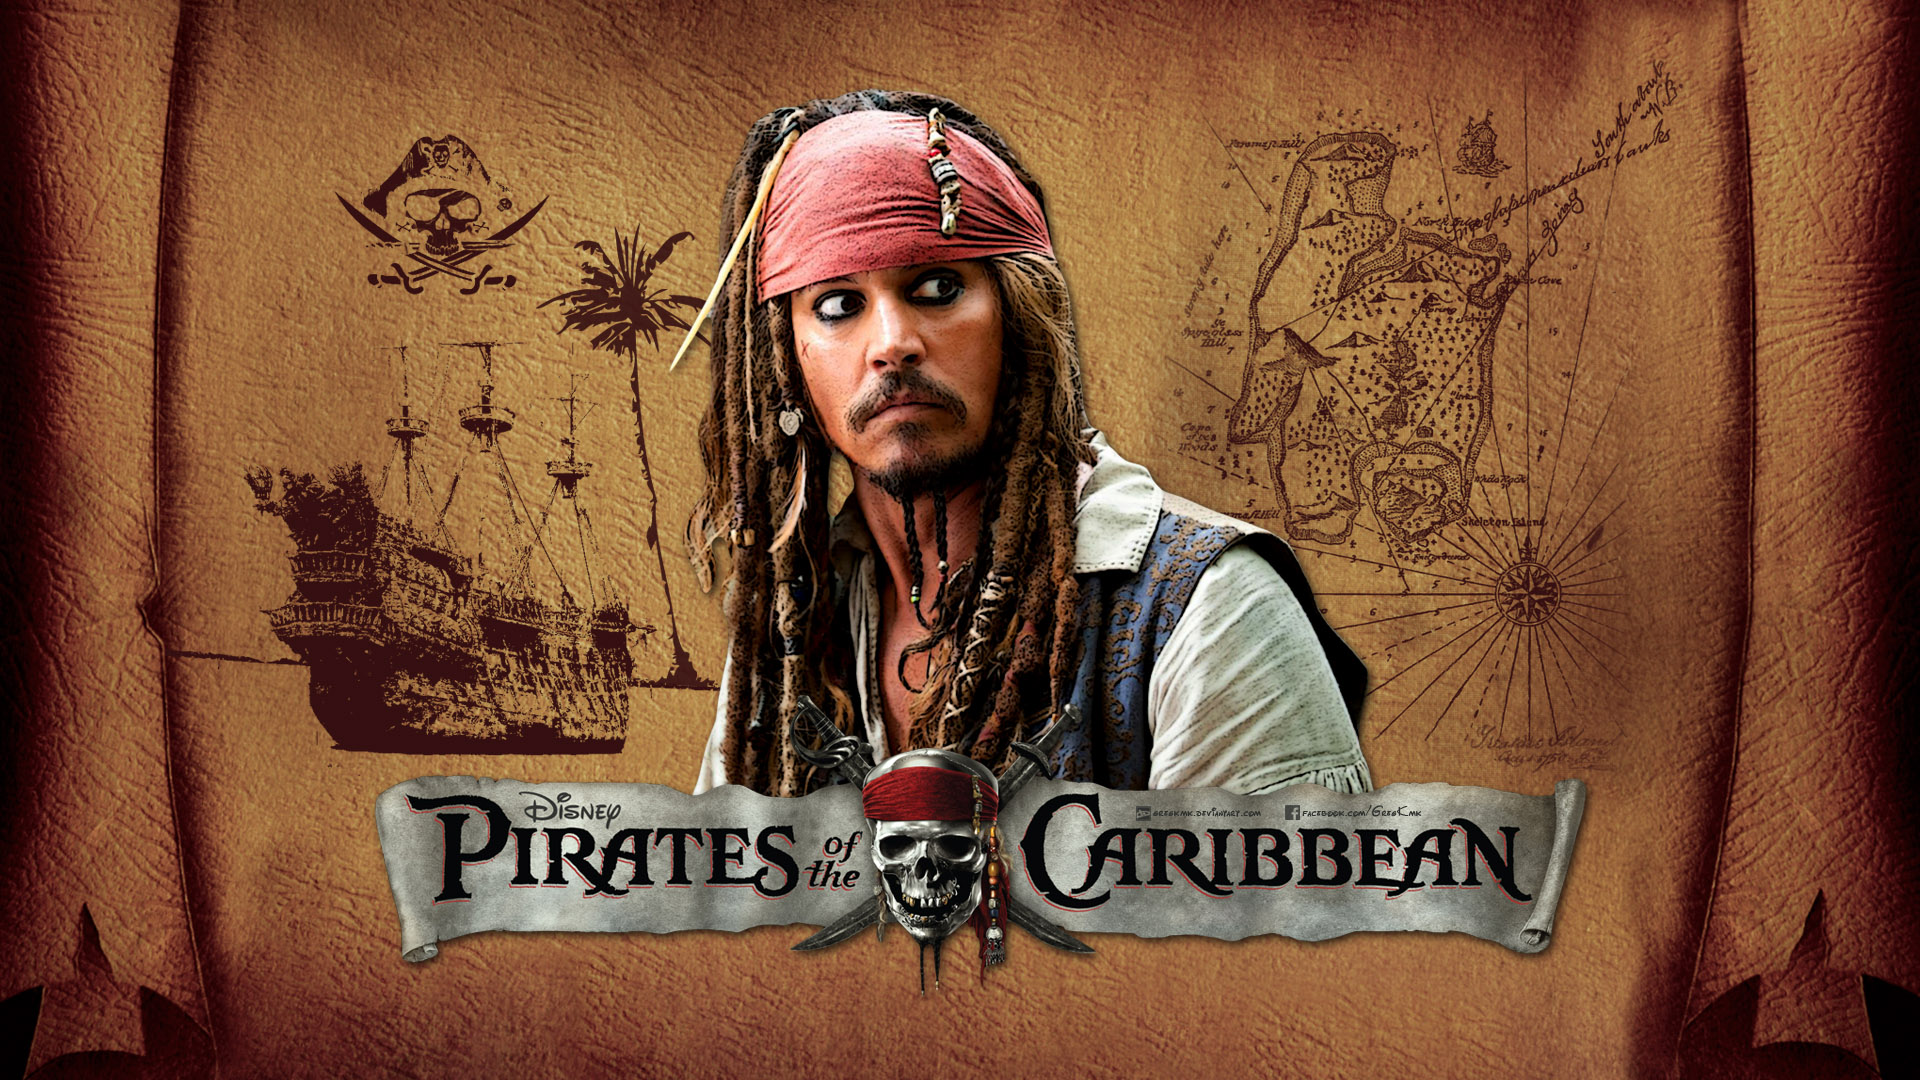 325160 免費下載壁紙 电影, 加勒比海盗, 迪斯尼, 杰克·斯派洛, 约翰尼·德普 屏保和圖片